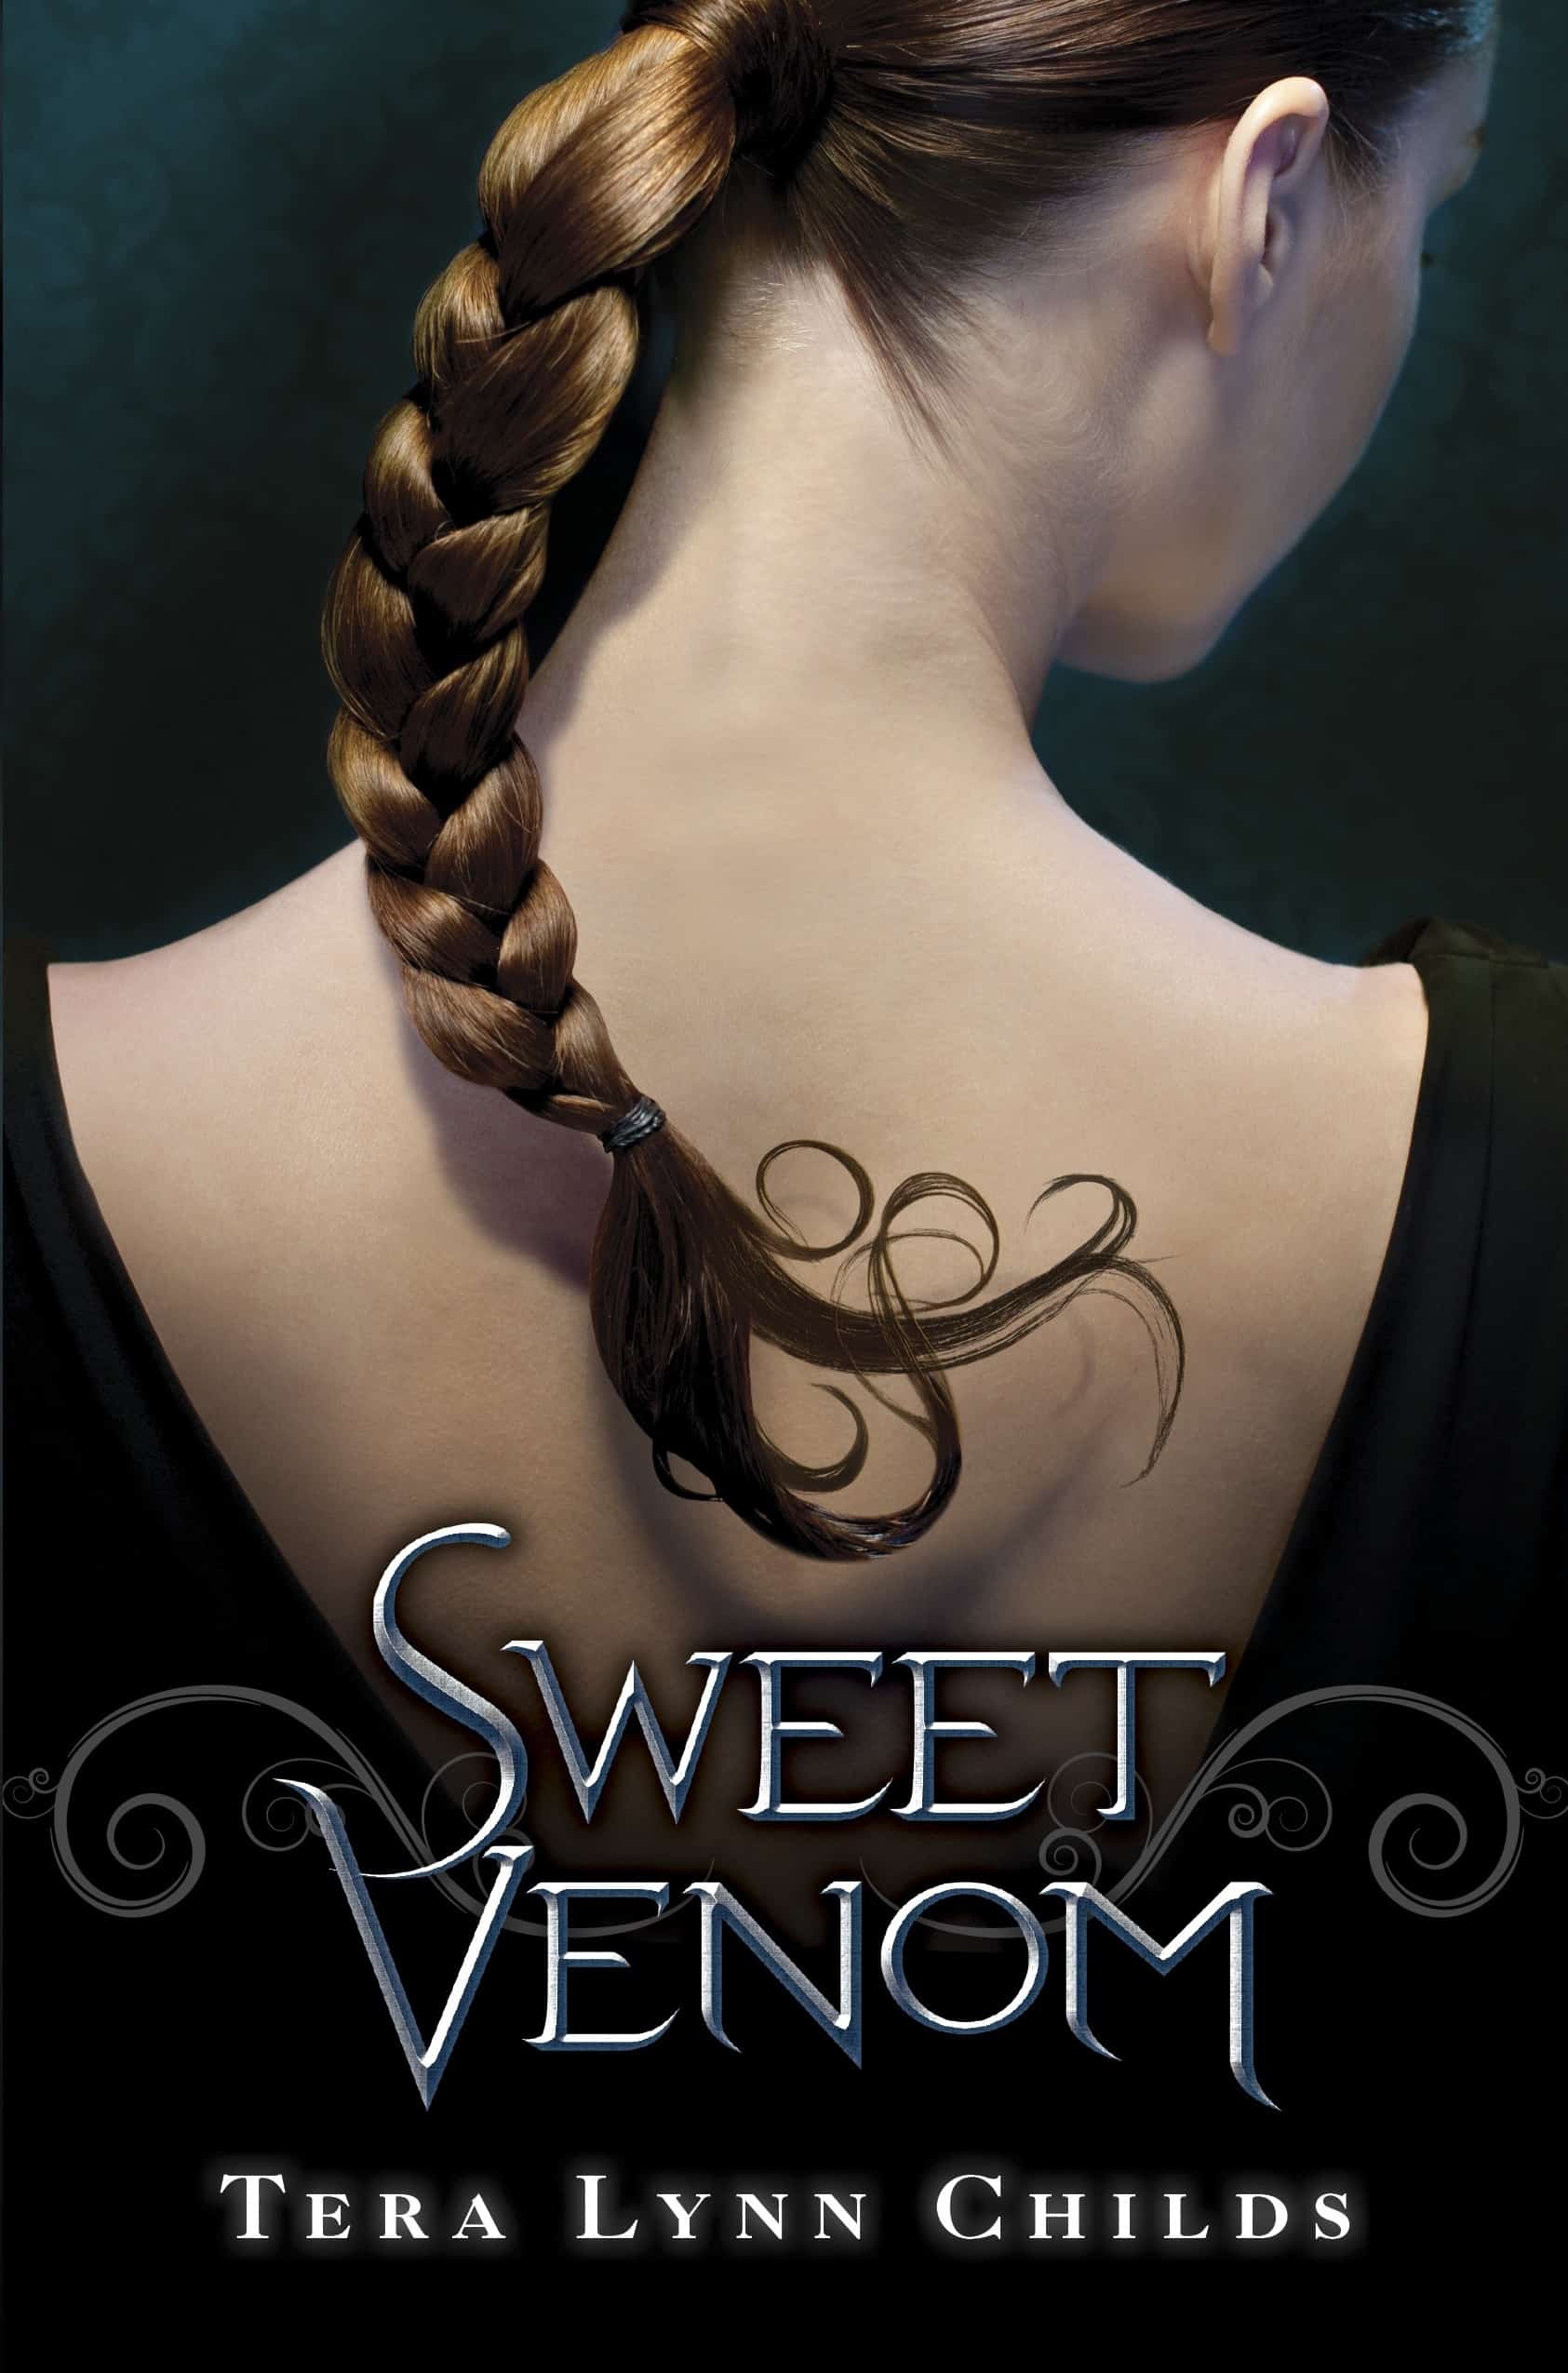 Sweet Venom by Tera Lynn Childs